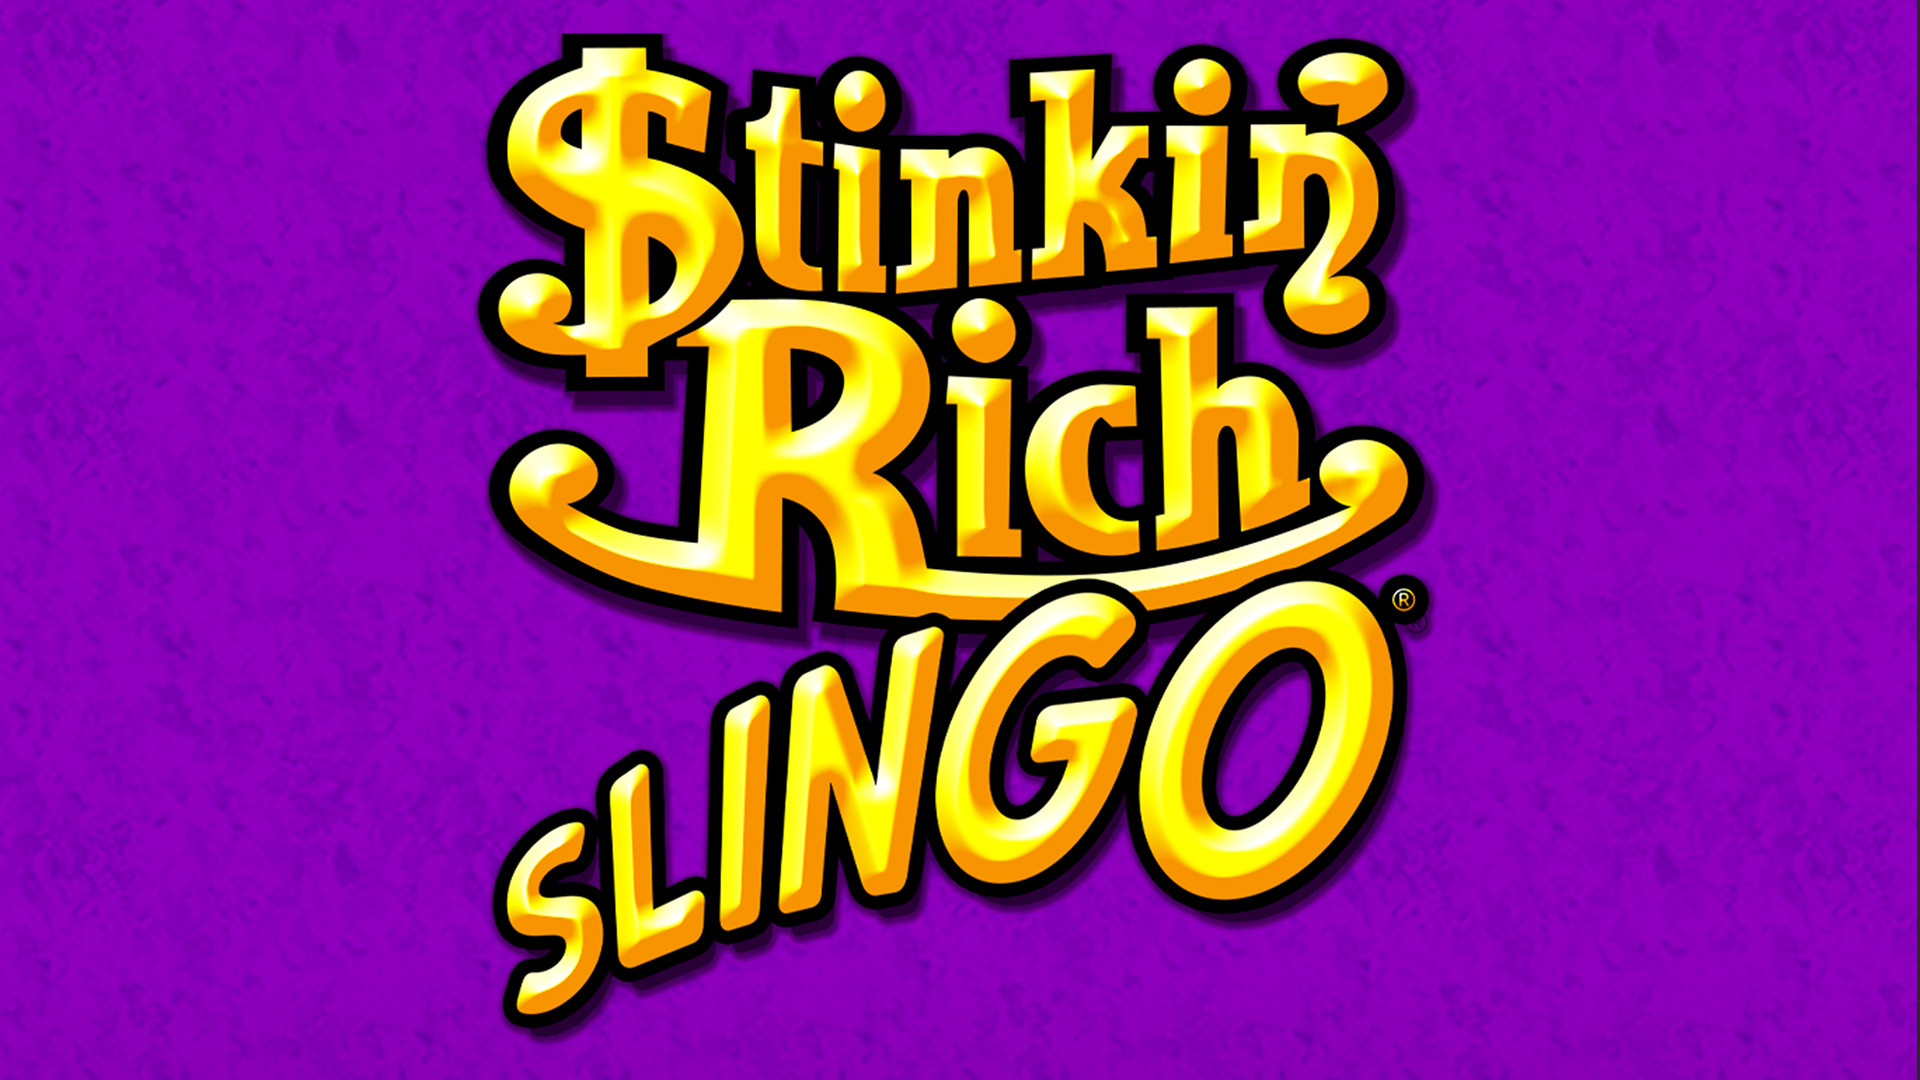 Slingo Stinkin' Rich